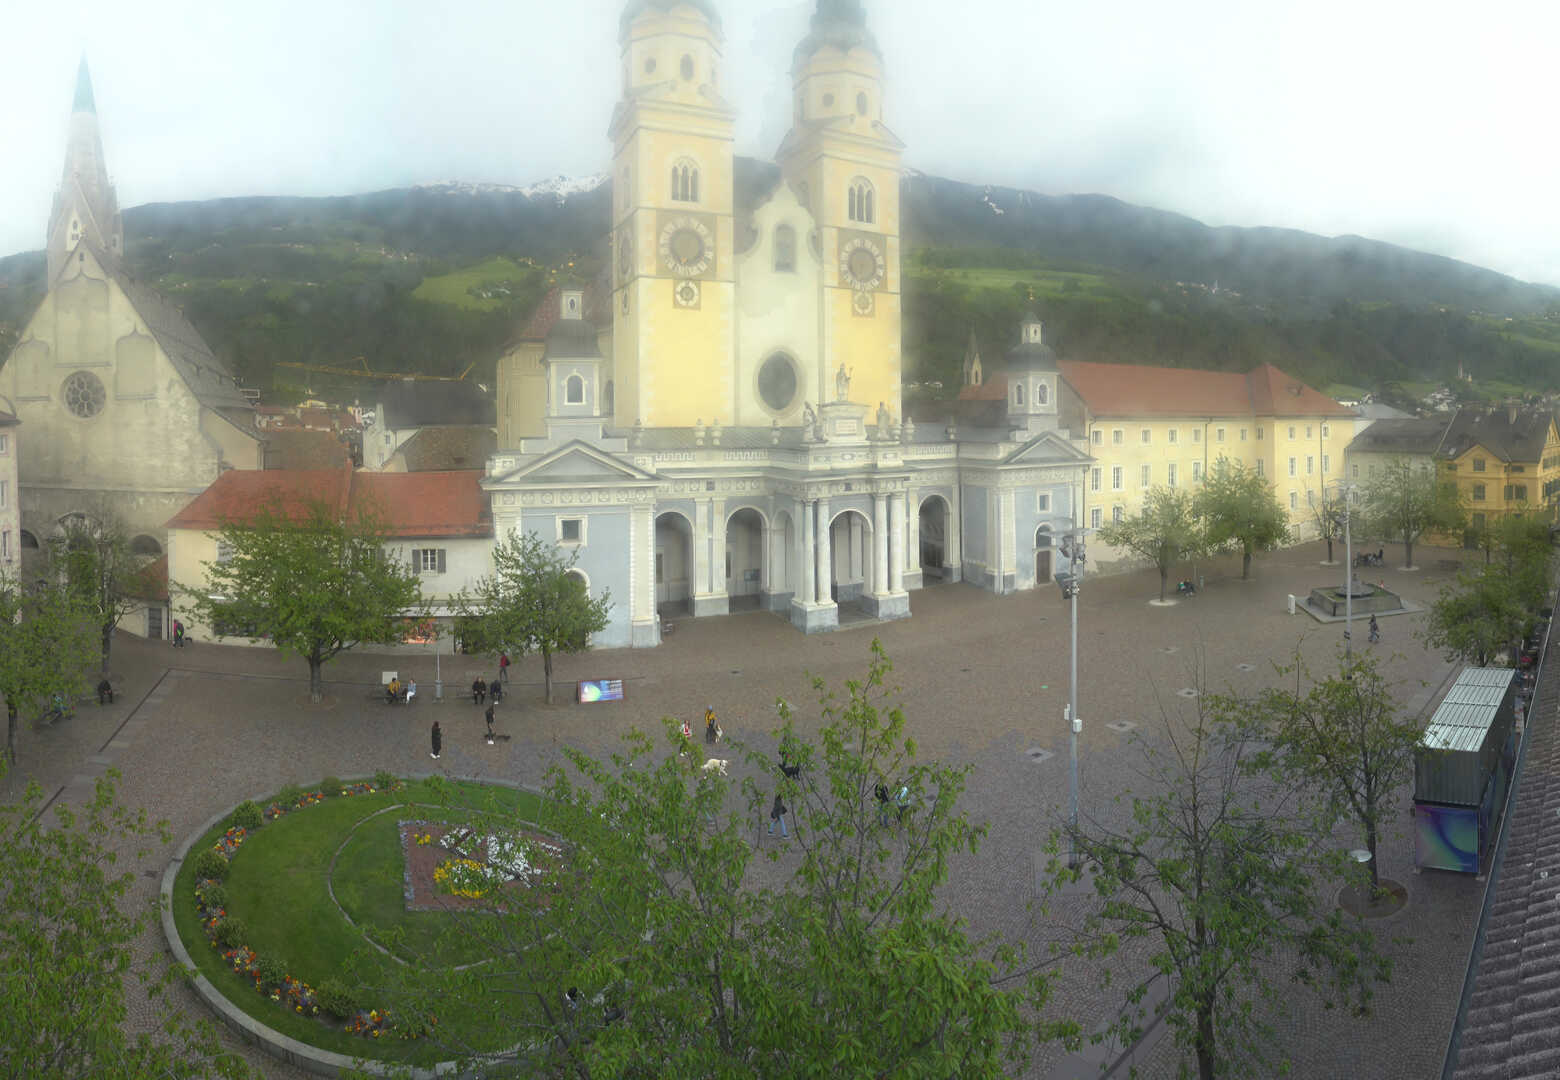 Webcam Brixen